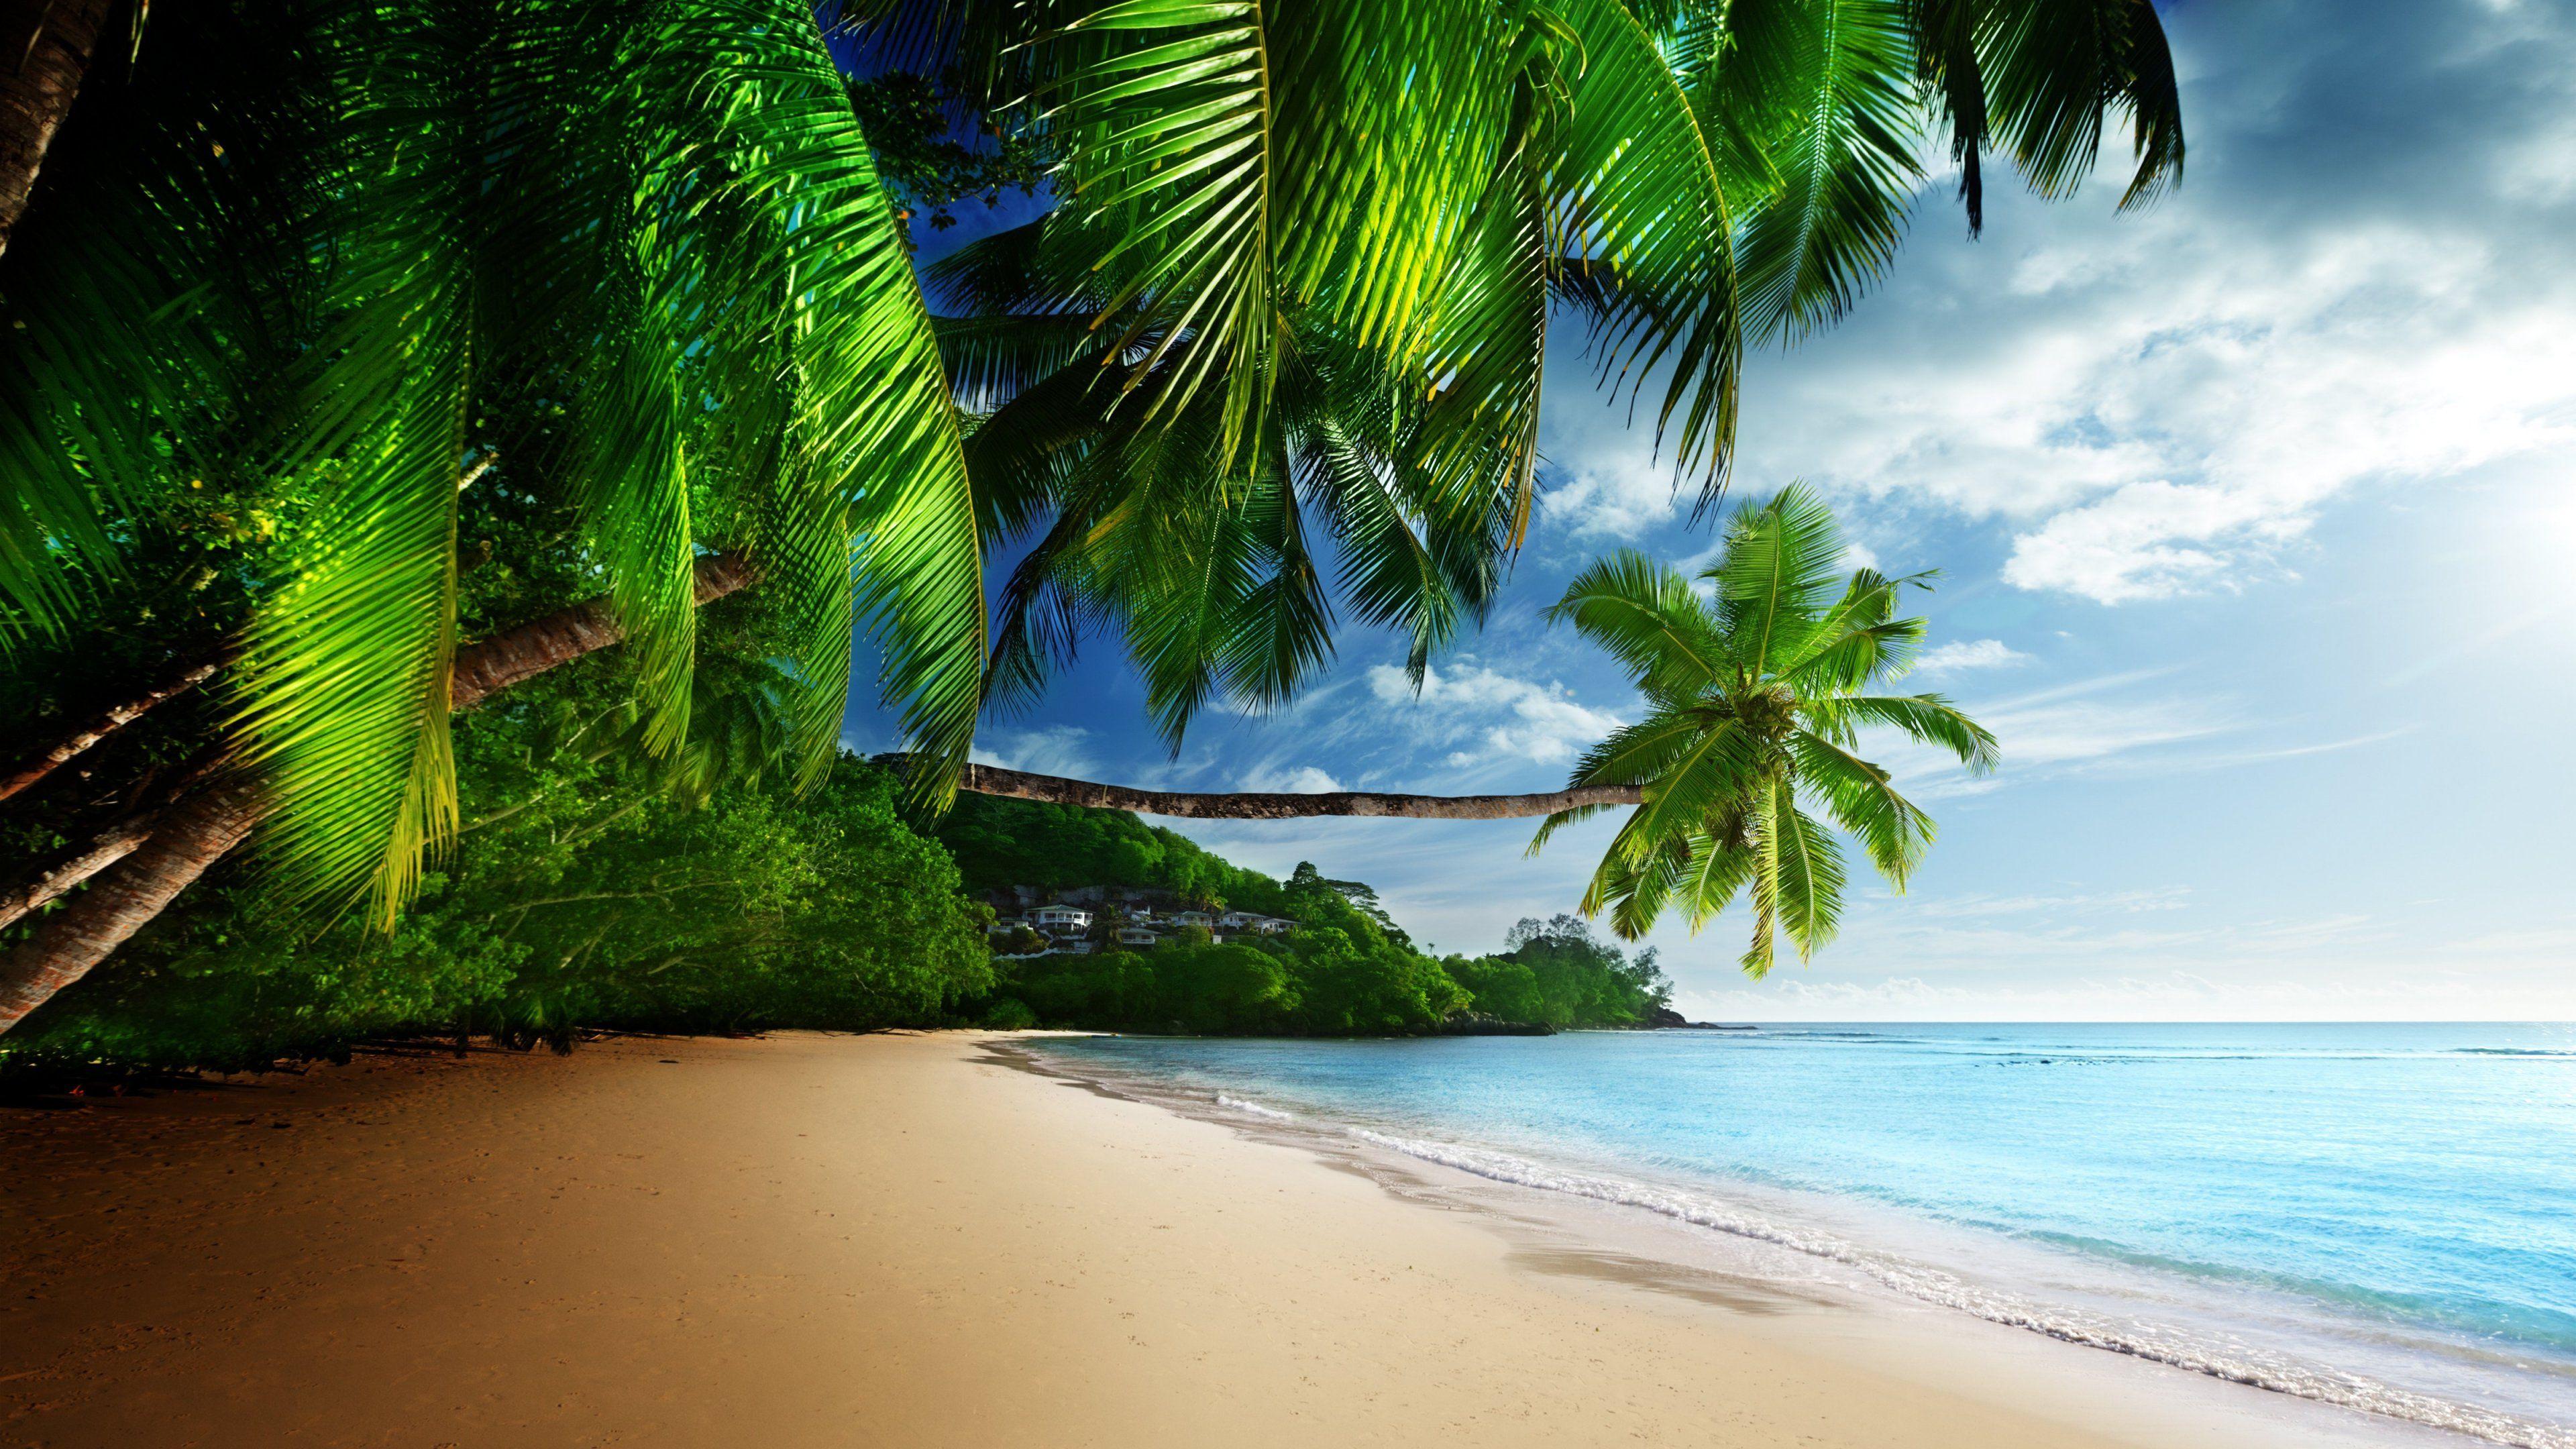 hd beach widescreen backgrounds